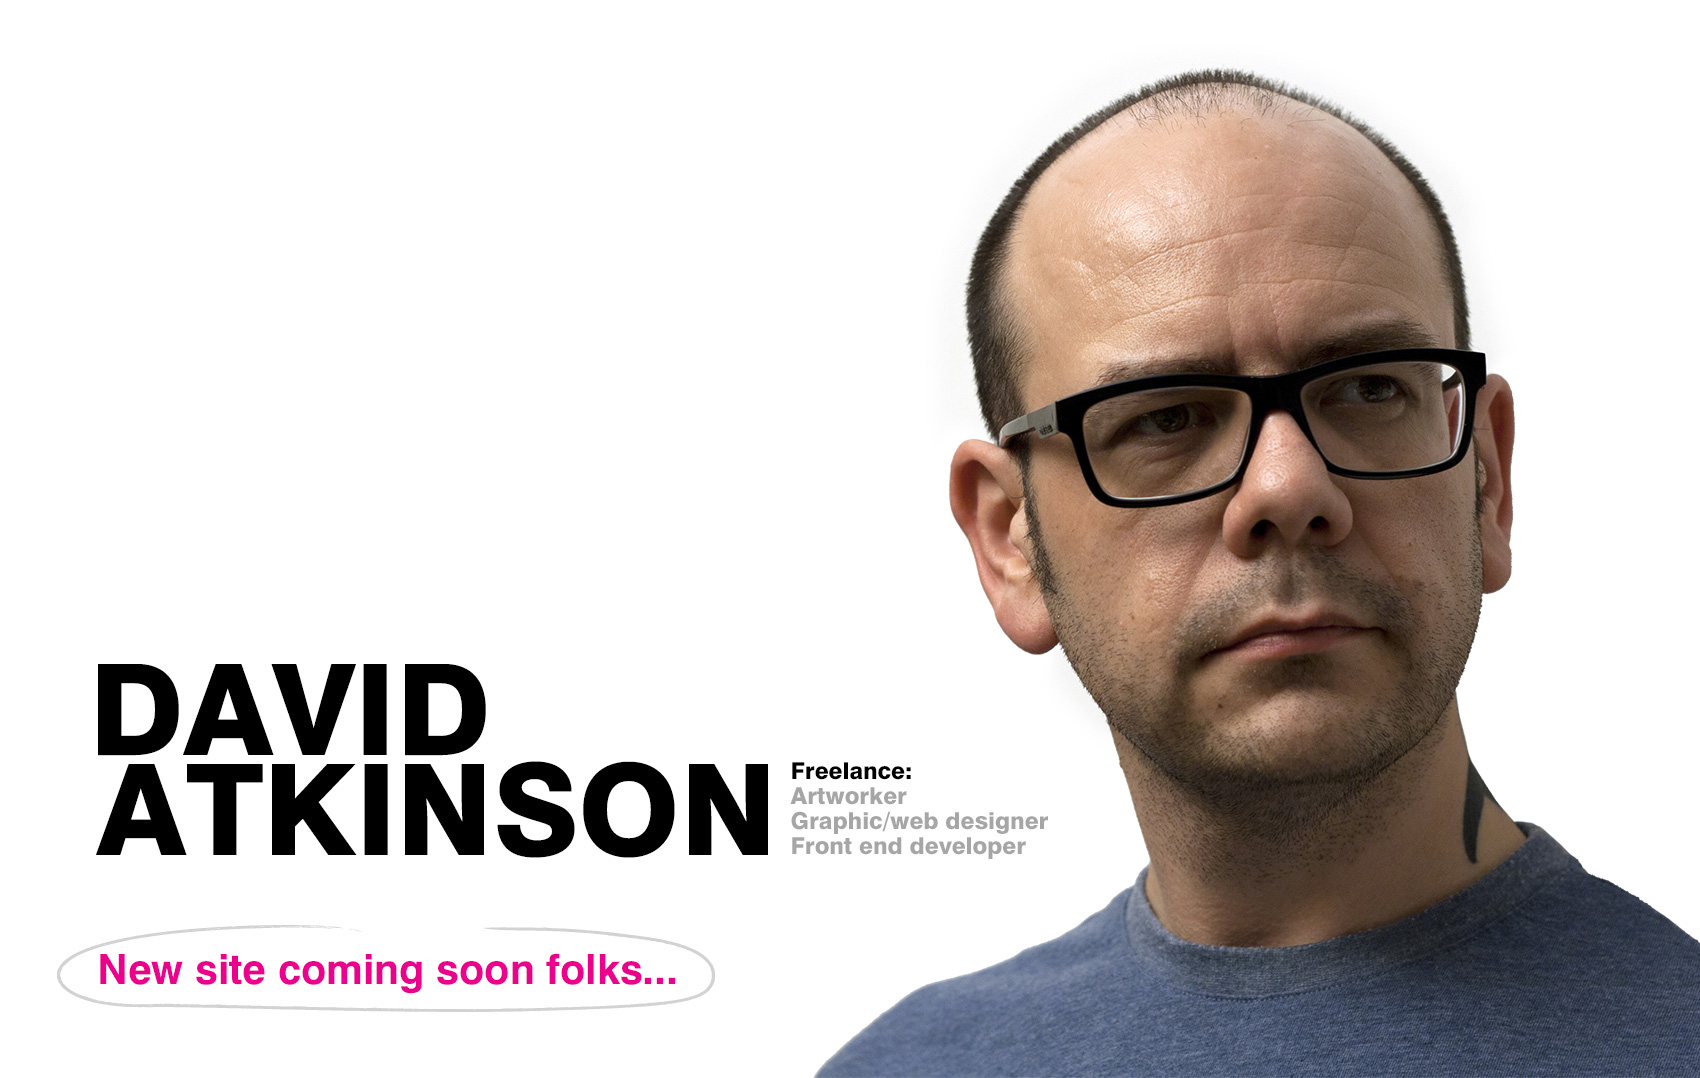 David Atkinson - Freelance artworker, graphic designer and front end web developer based in Manchester